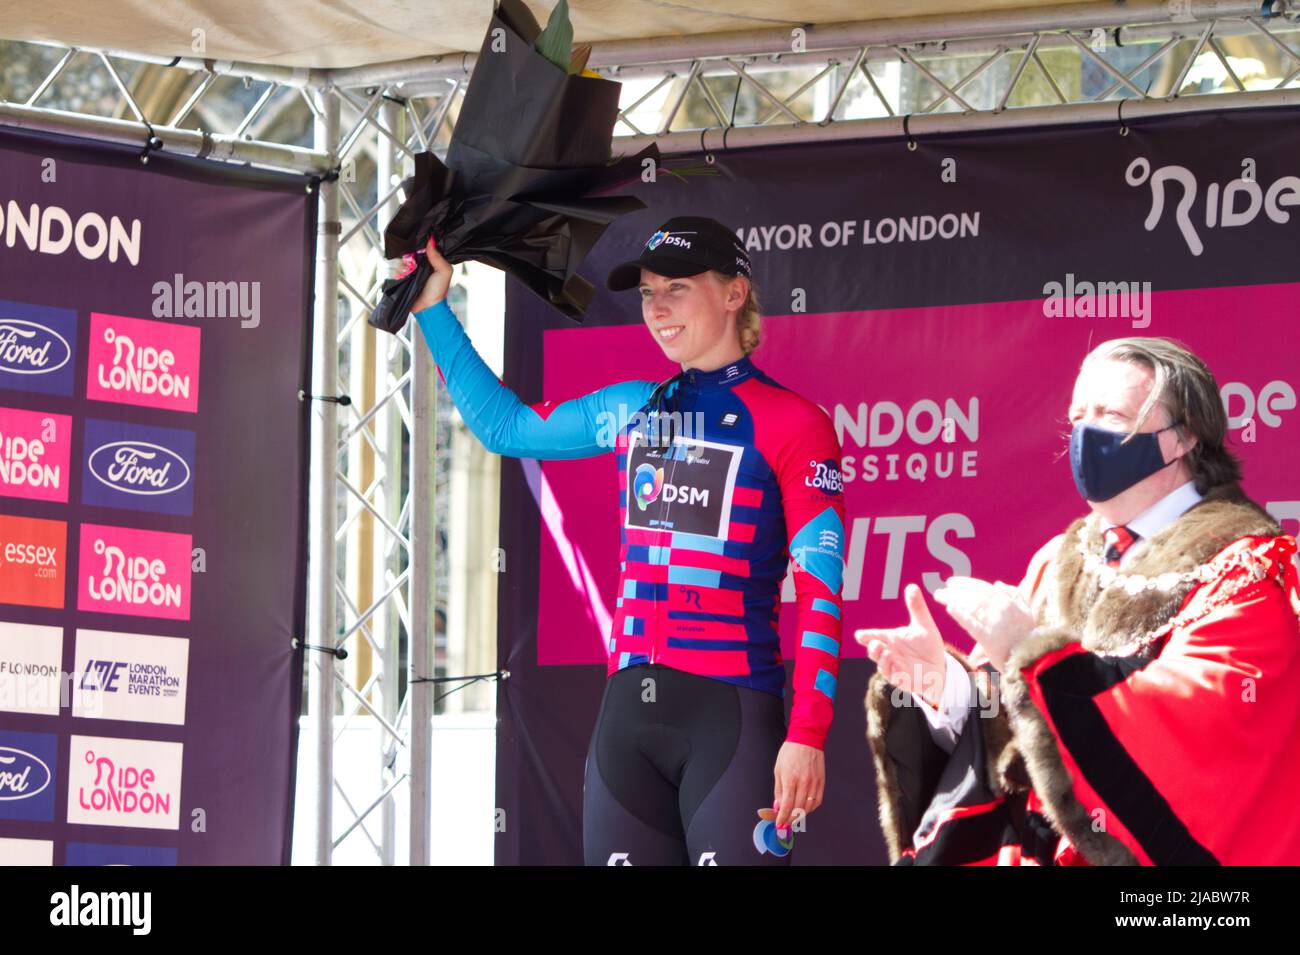 Première étape de la course cycliste féminine RideLondon Classique 2022 à Maldon, Essex. Lorena Wiebes de l'équipe DSM porte le maillot sprints sur le podium. Banque D'Images